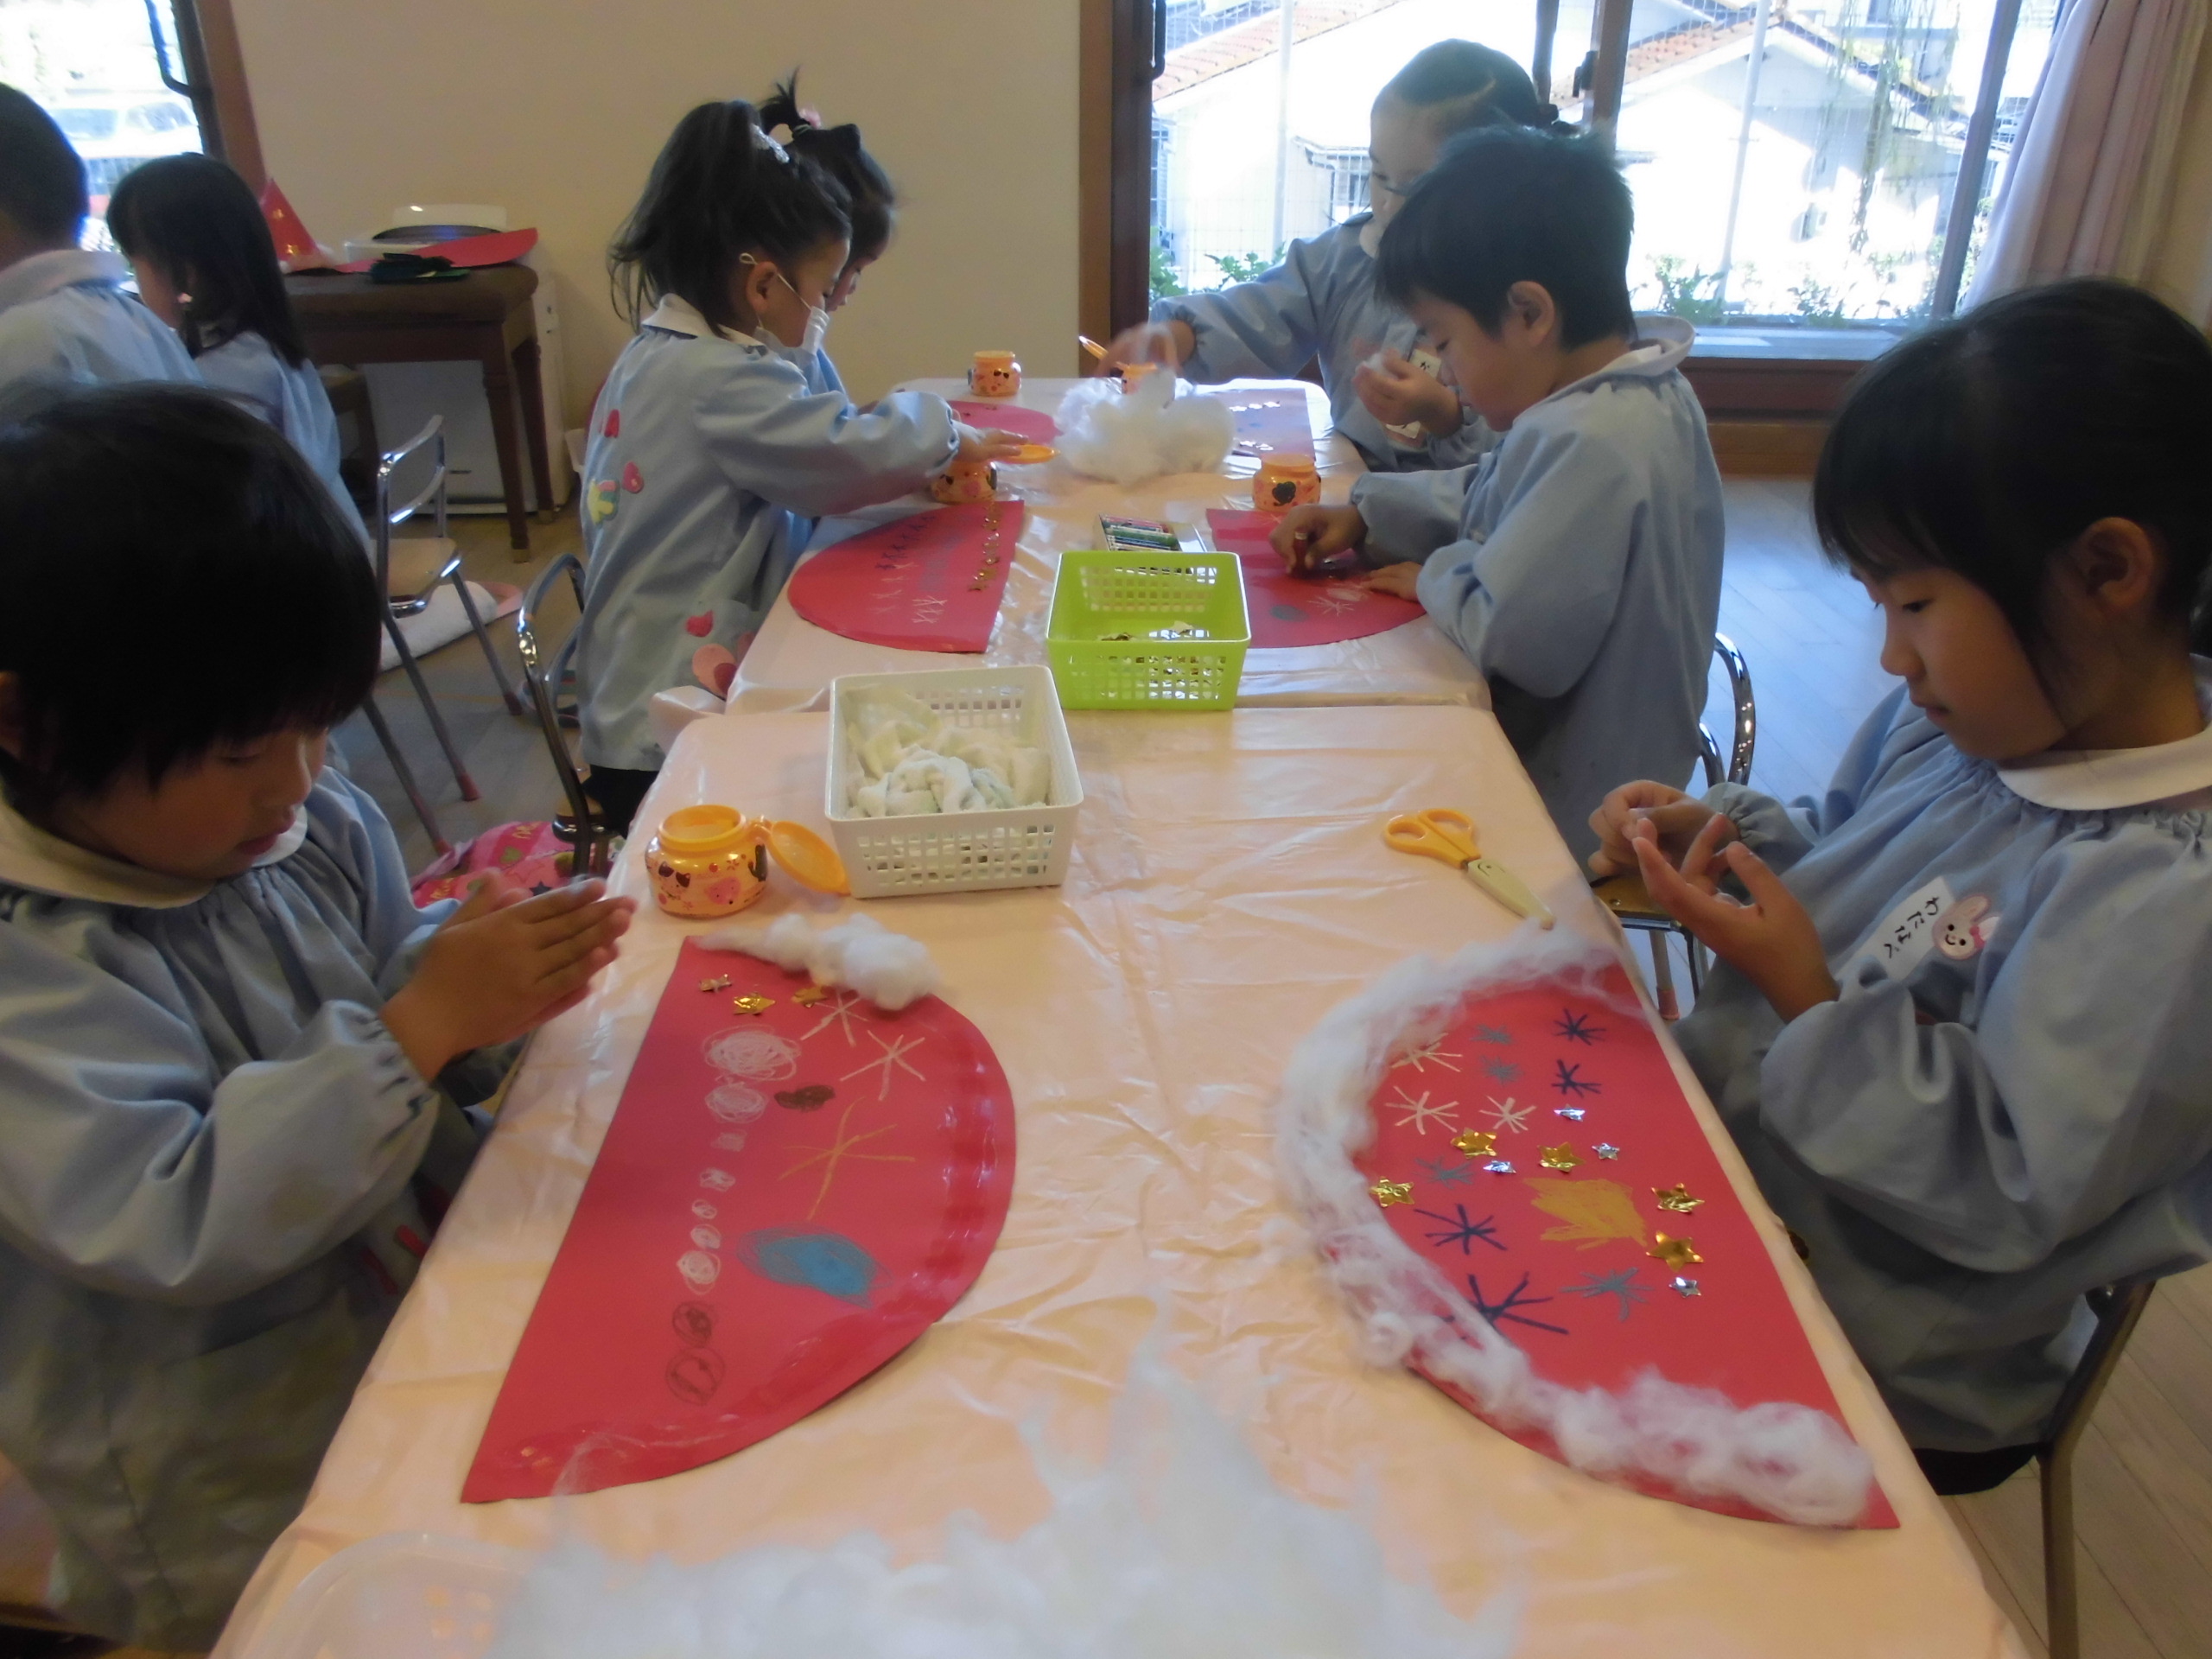 クリスマス製作 三角帽子づくり 鶴ヶ谷幼稚園